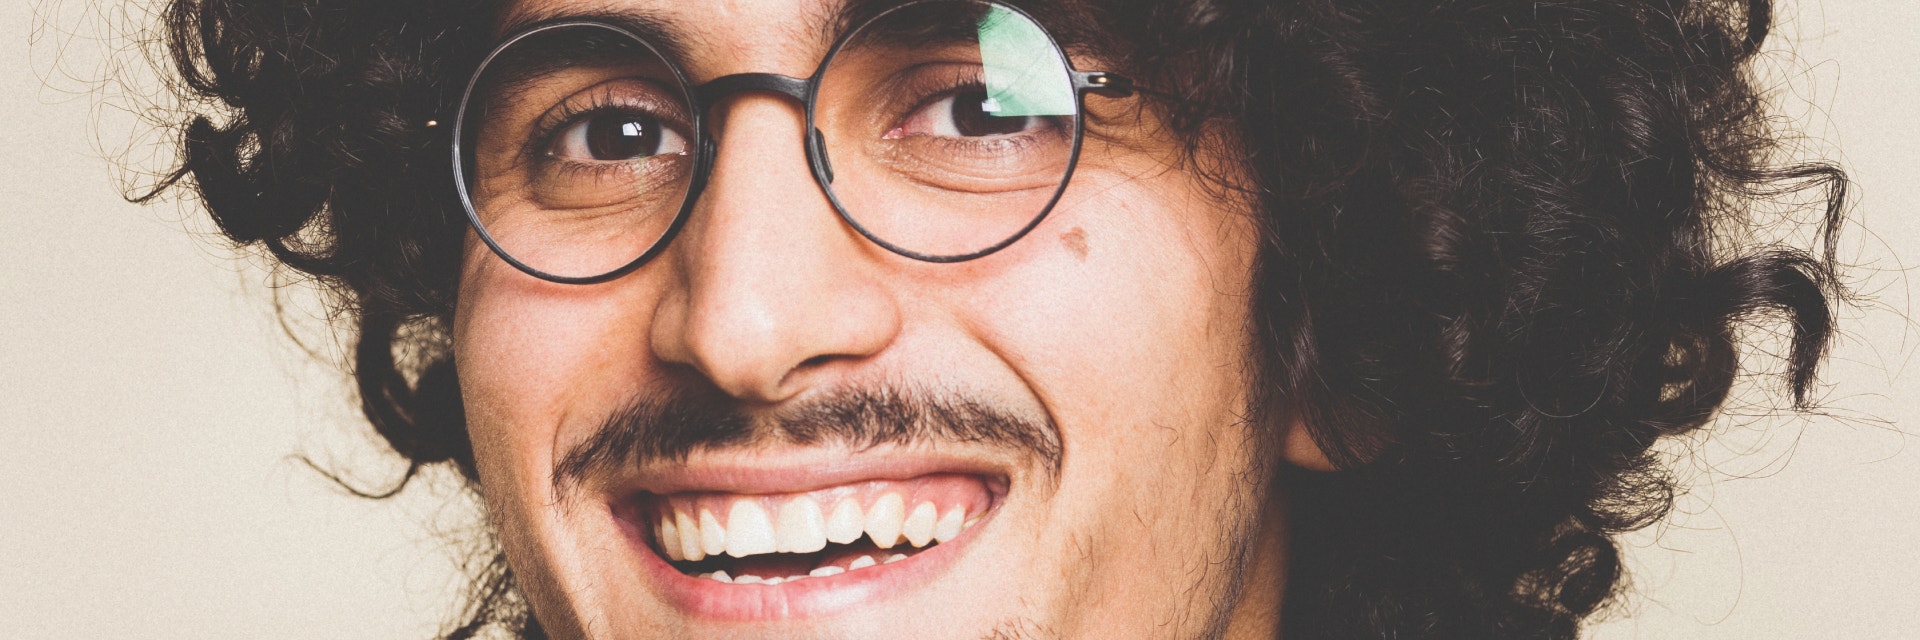 Homme avec des cheveux bouclés et une moustache souriant tout en portant des lunettes weareannu imprimées en 3D